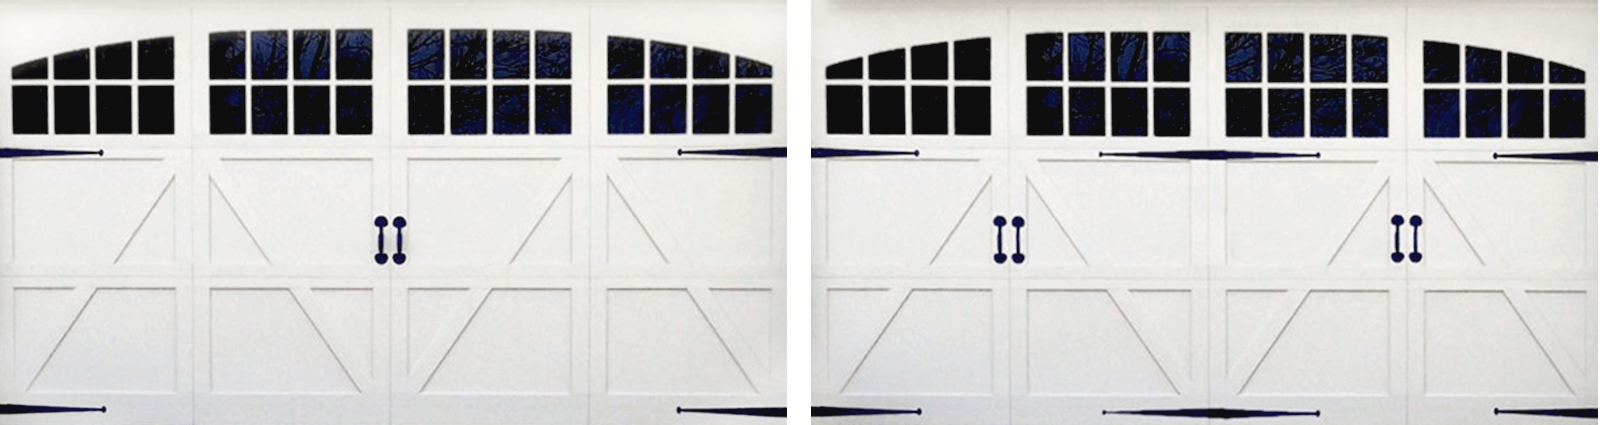 Garage Door Decorative Hardware, Garage Door Hardware Placement